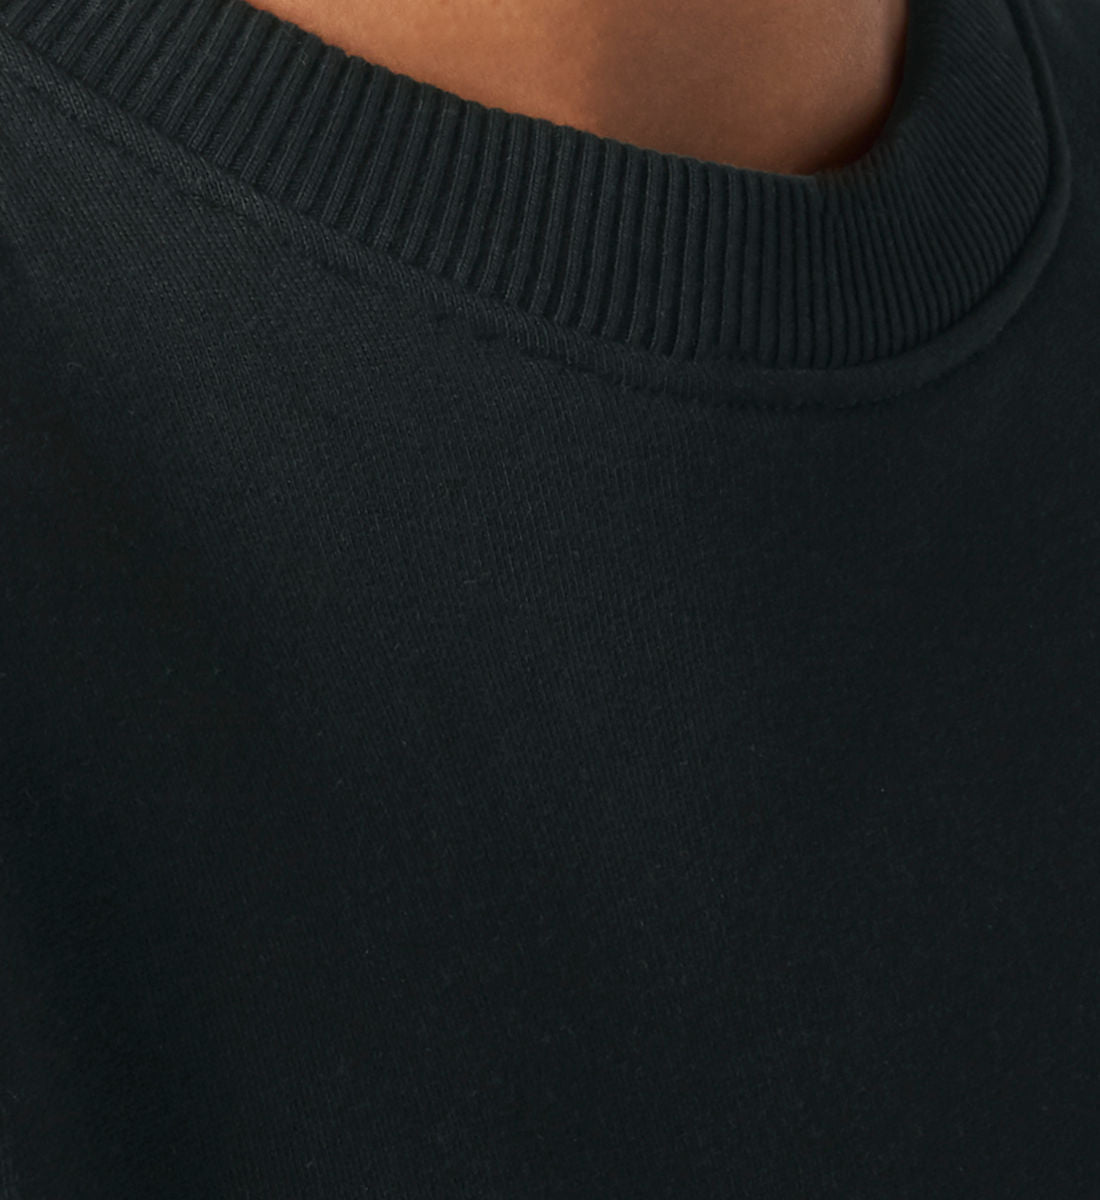 Schwarzes Sweatshirt Unisex Relaxed Fit für Frauen und Männer bedruckt mit dem Design der Roger Rockawoo Kollektion Rocknroll Weekend Guitar Goddess